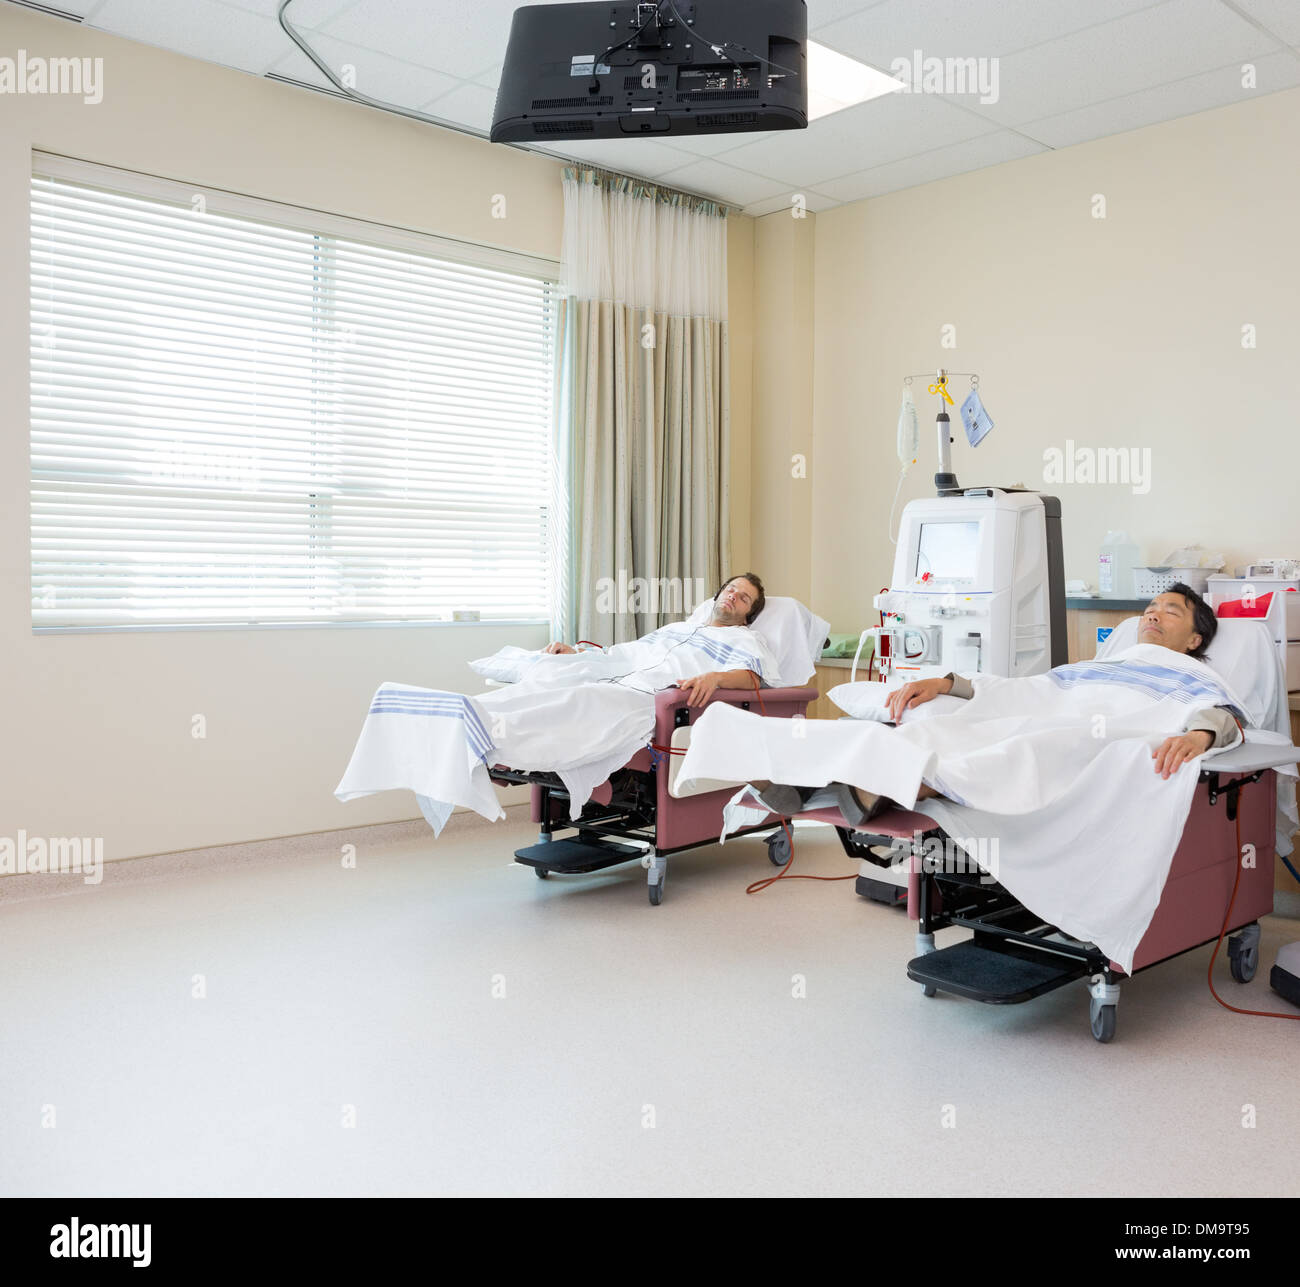 Patienten, die Dialyse im Krankenzimmer Stockfoto